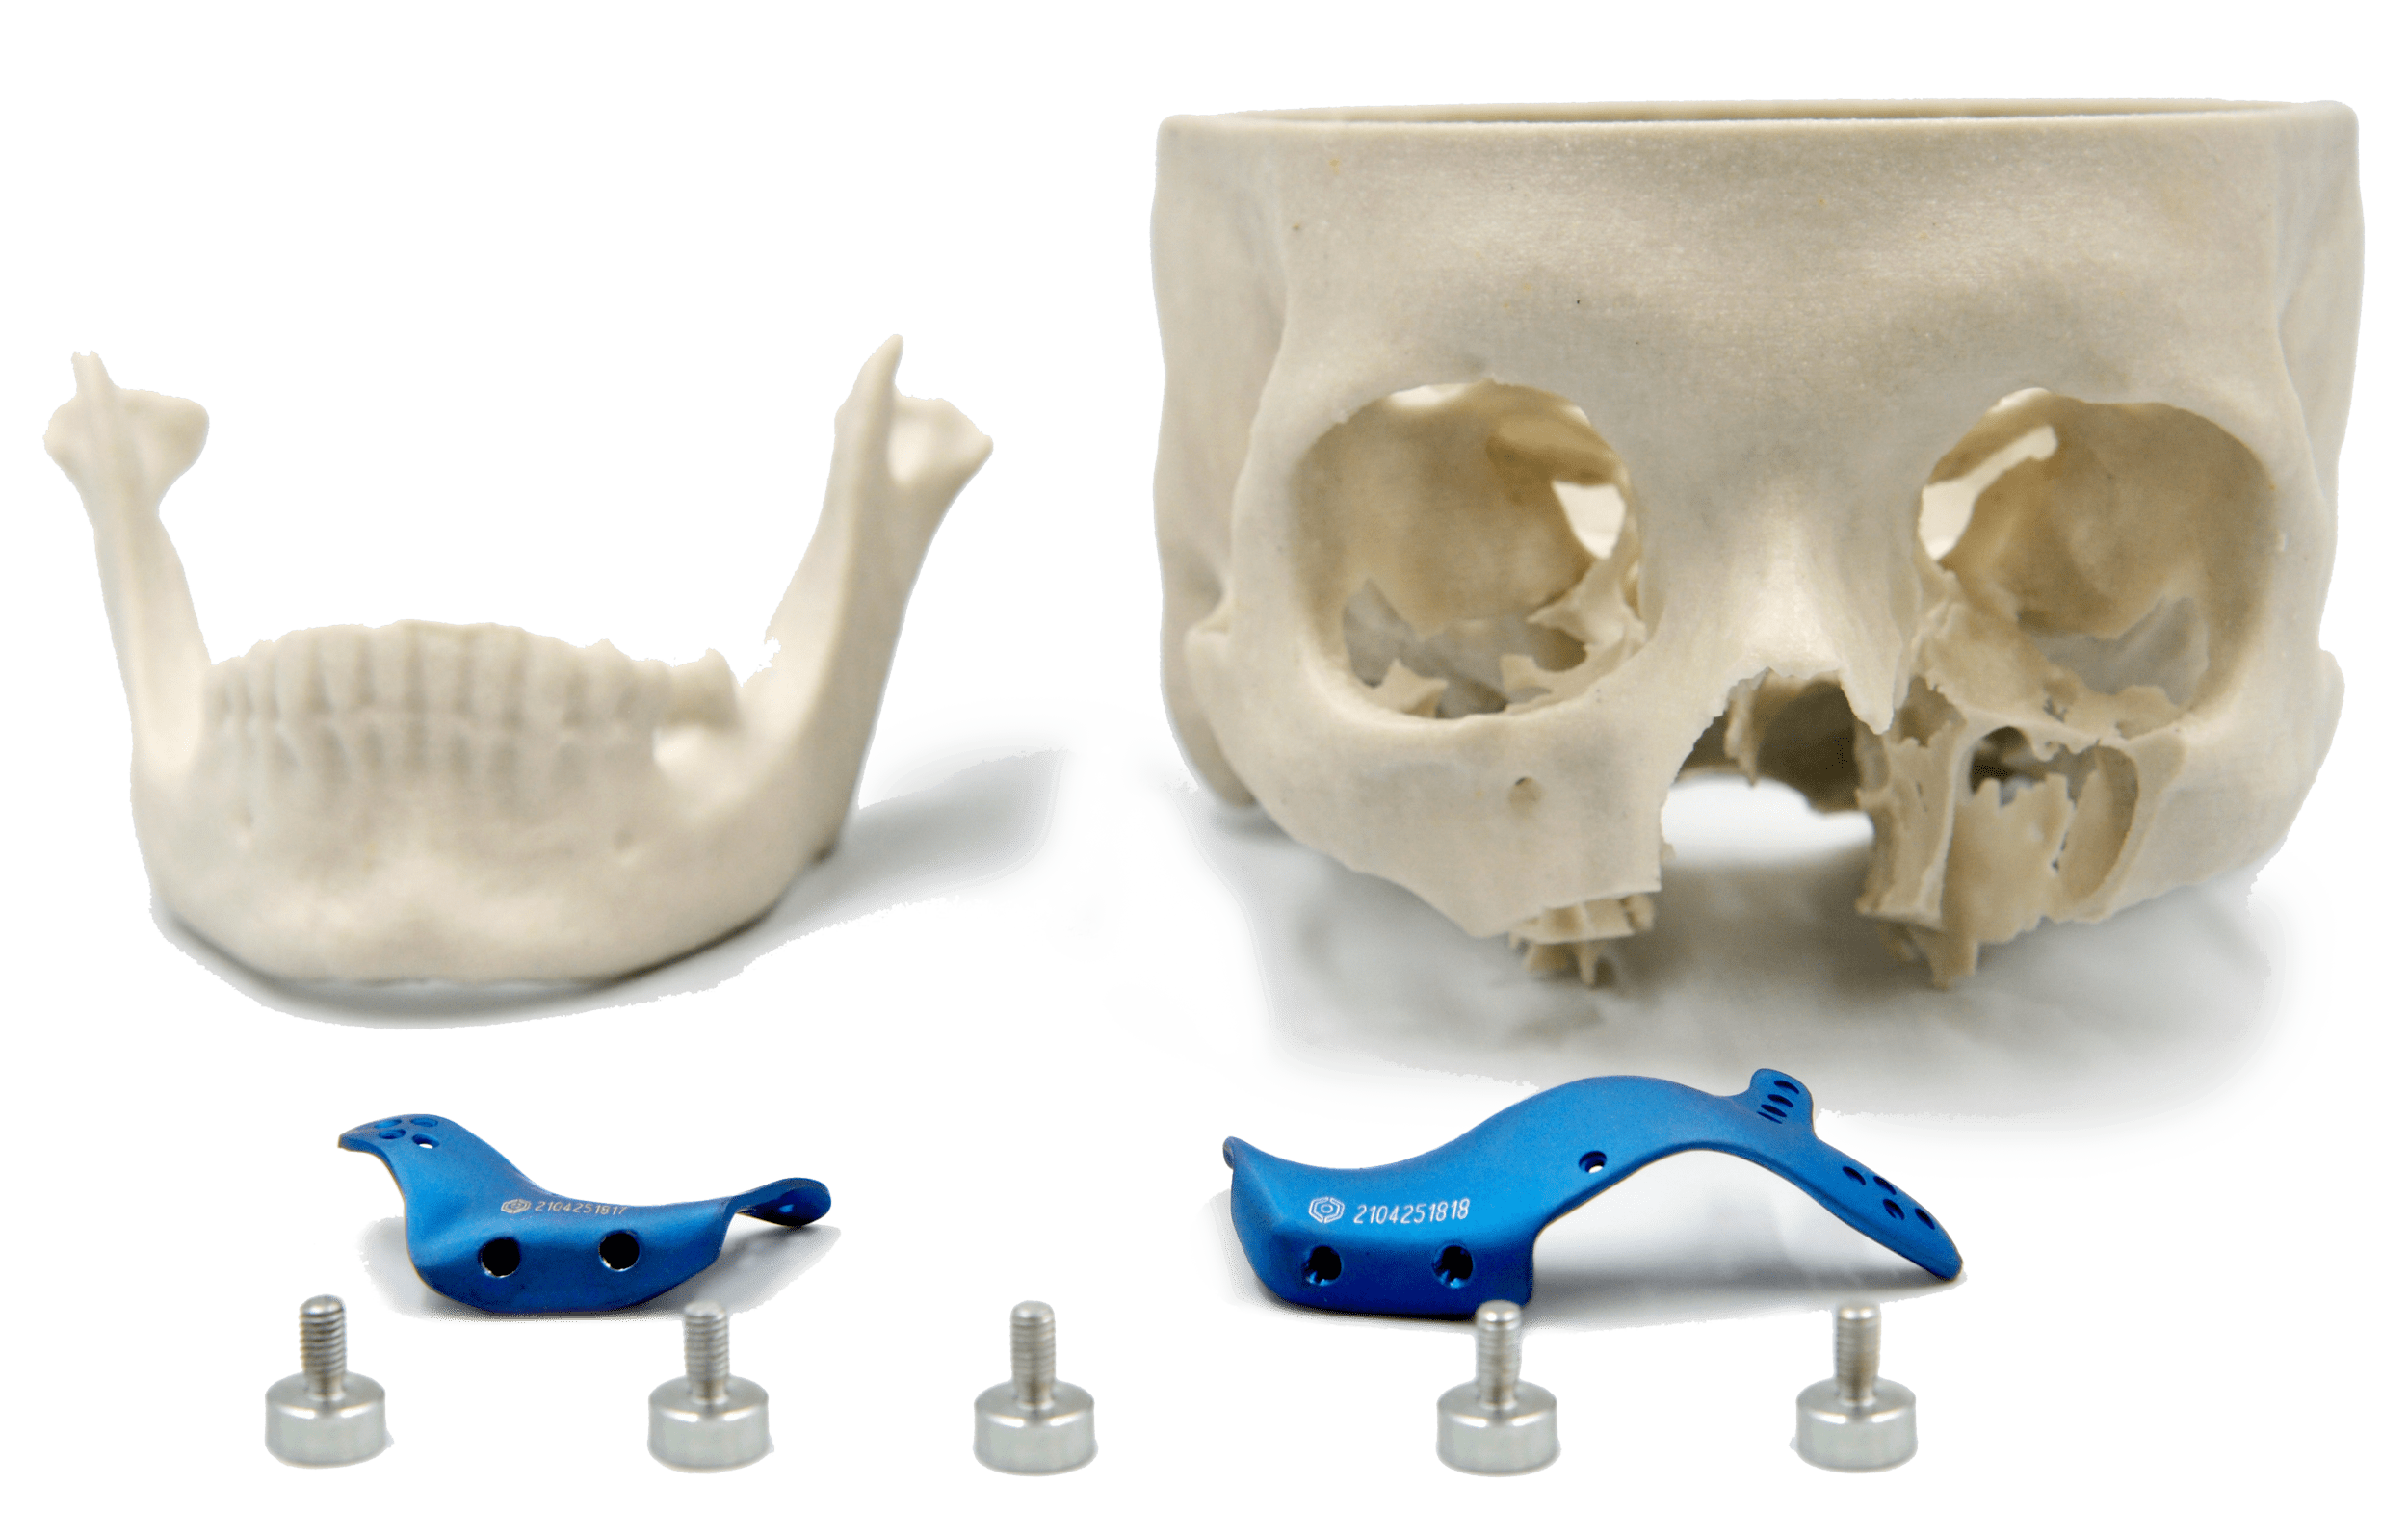 Próteses de maxila em titânio com parafusos e biomodelo ao fundo